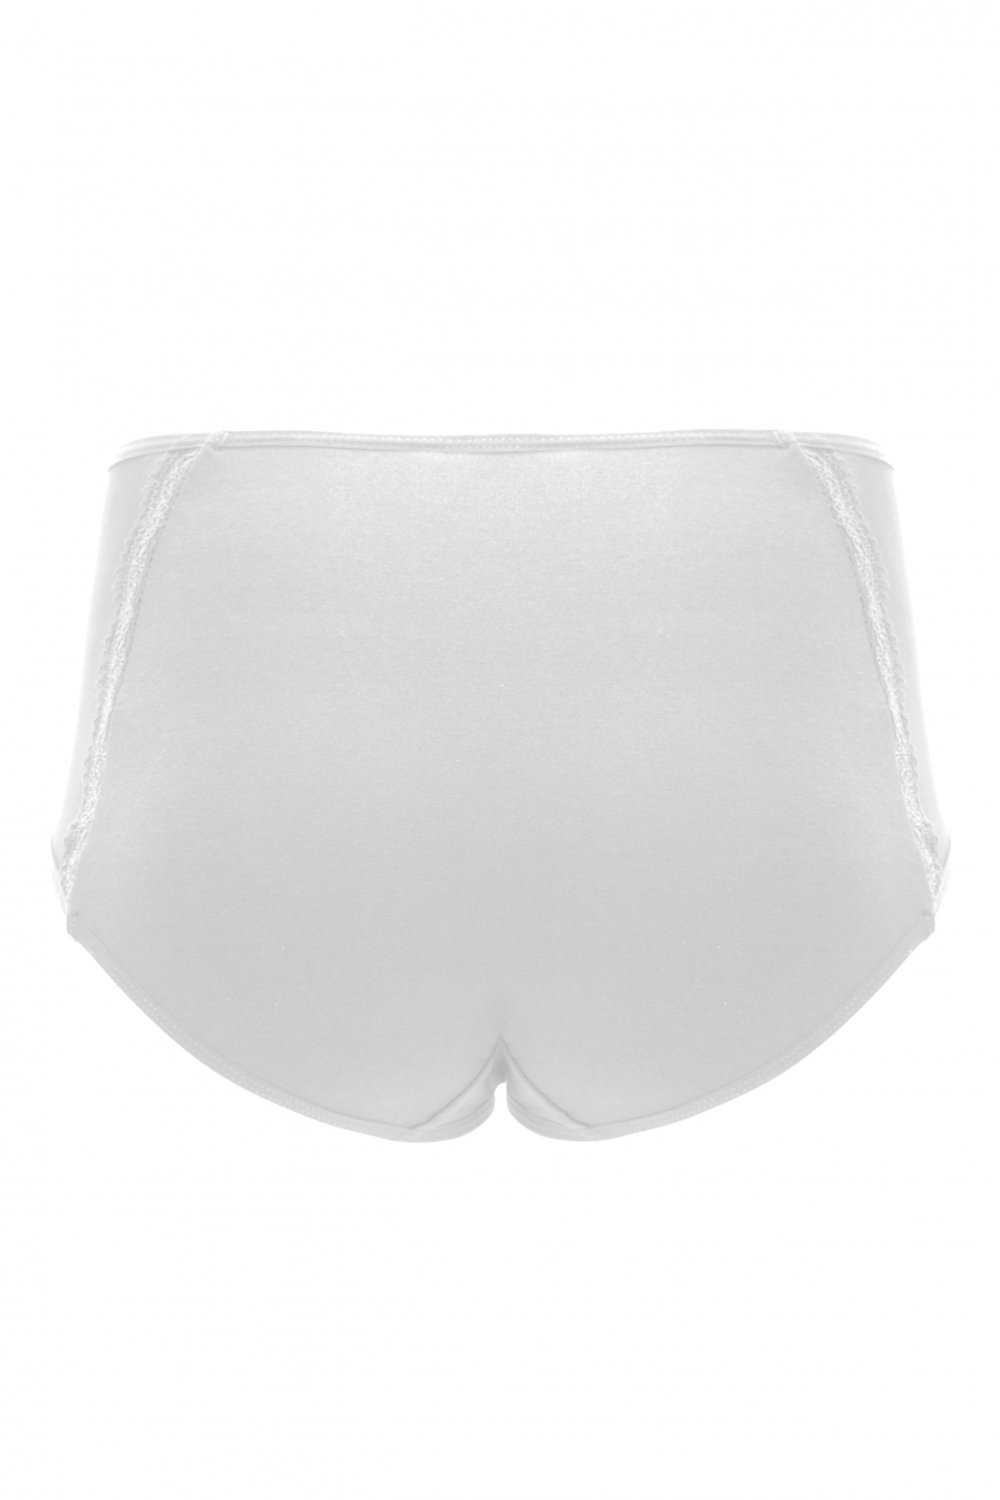 Dámské kalhotky white Bílá S model 16192839 - Emili